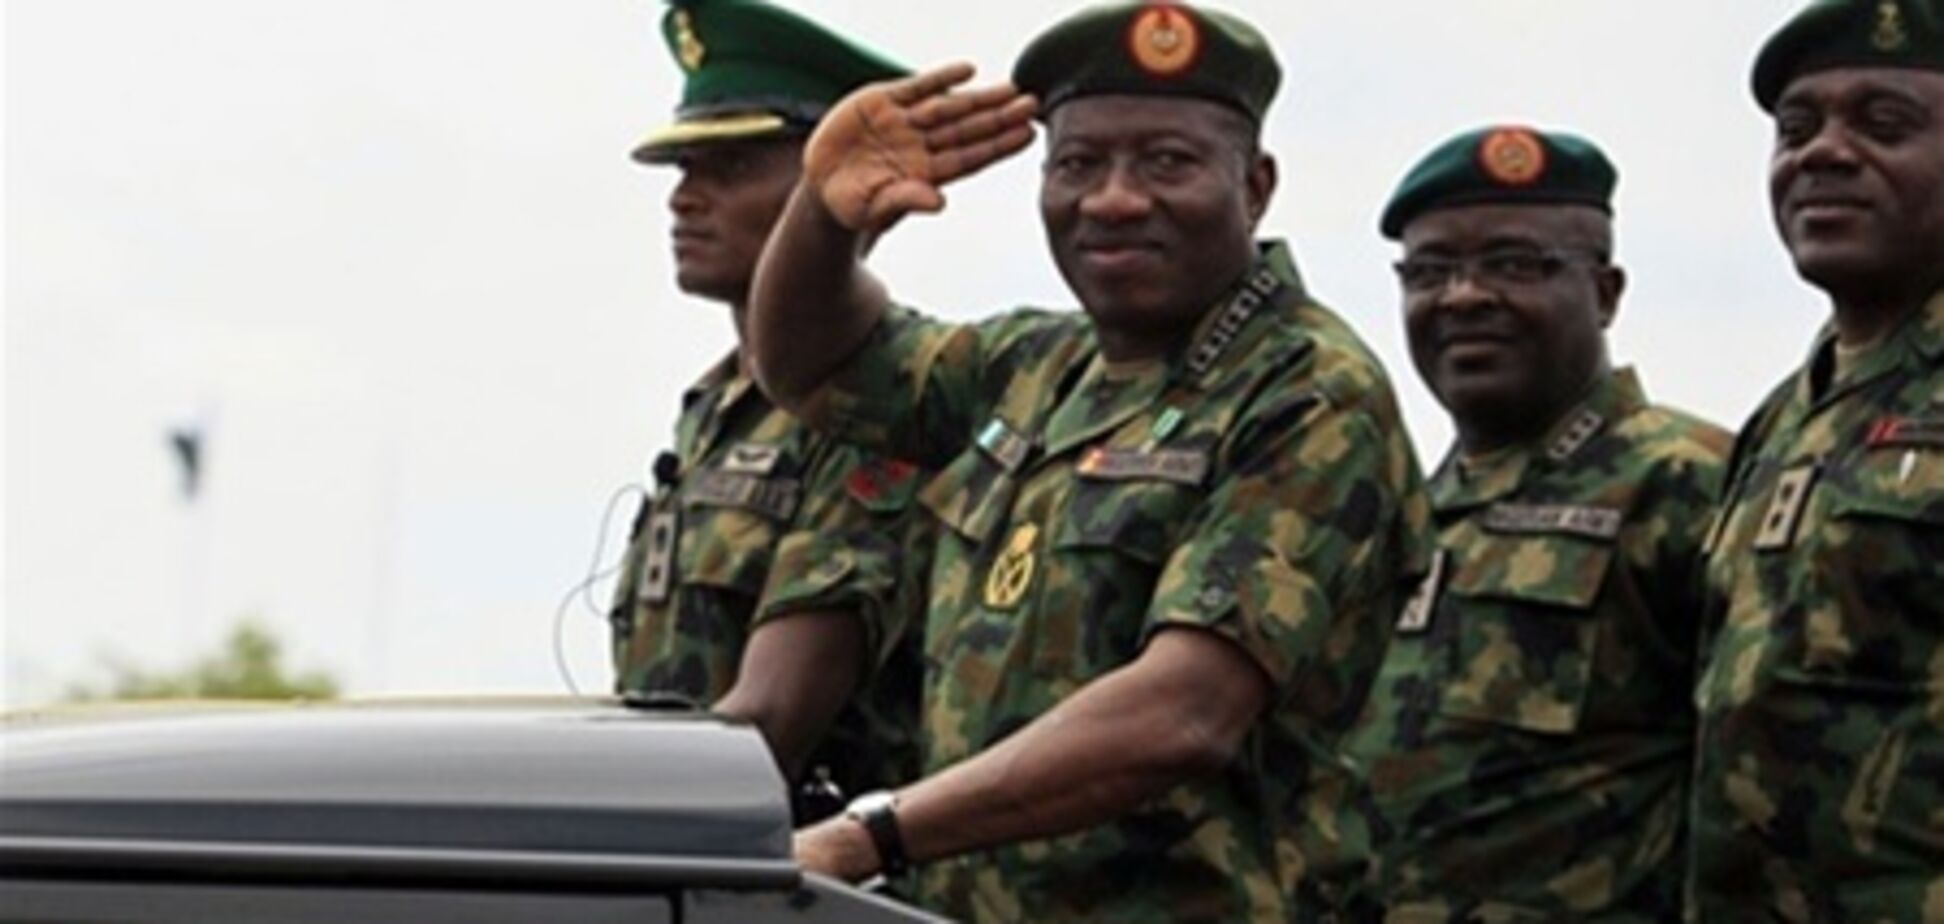 У Нігерії заарештовано чоловіка, який видає себе за главу ВПС країни